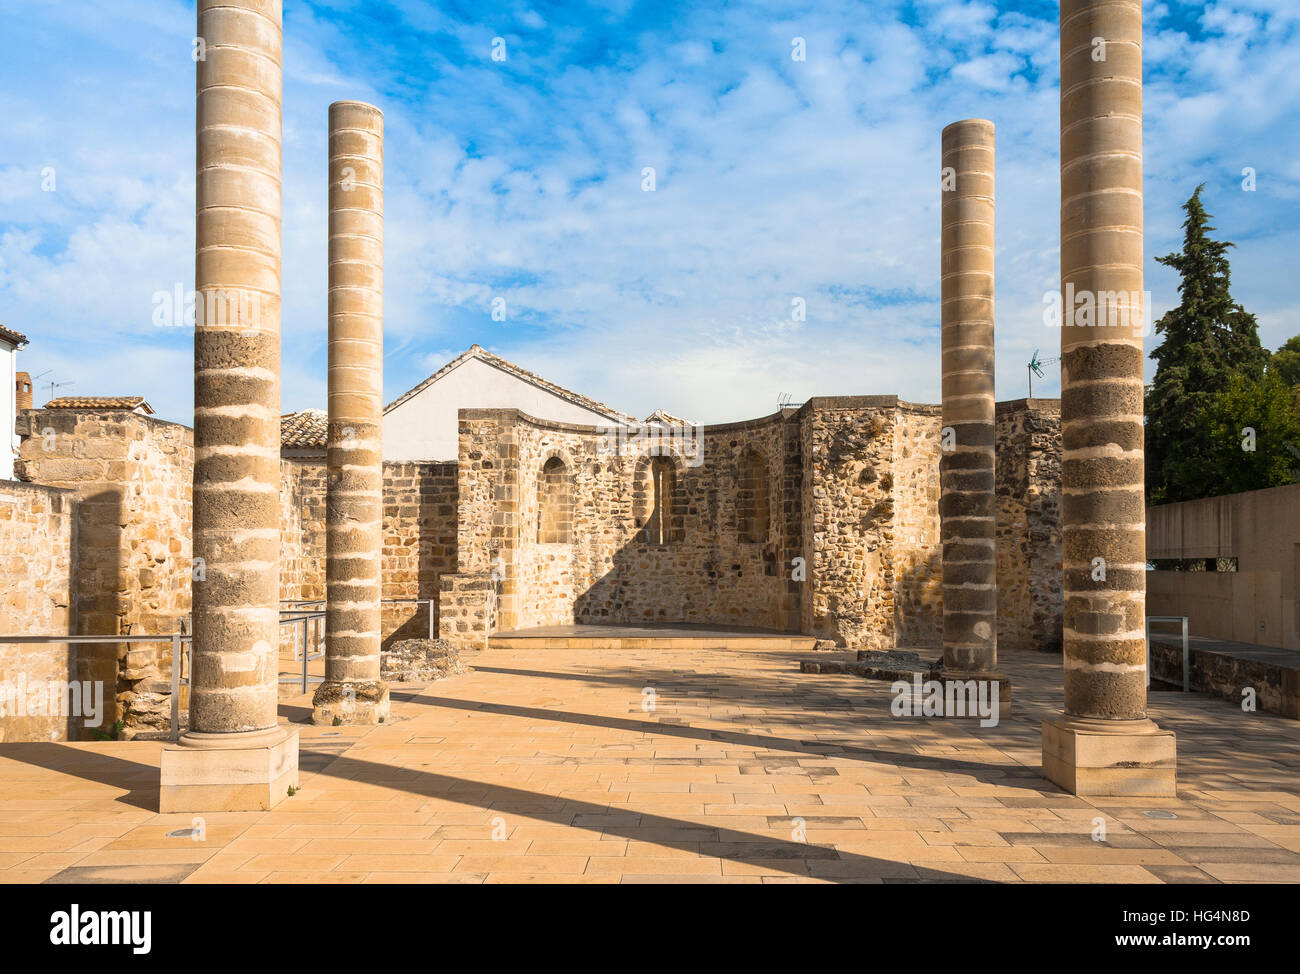 Site archéologique de romains en Baeza, site du patrimoine mondial de l'Unesco de la Renaissance, Andalousie, Espagne Banque D'Images